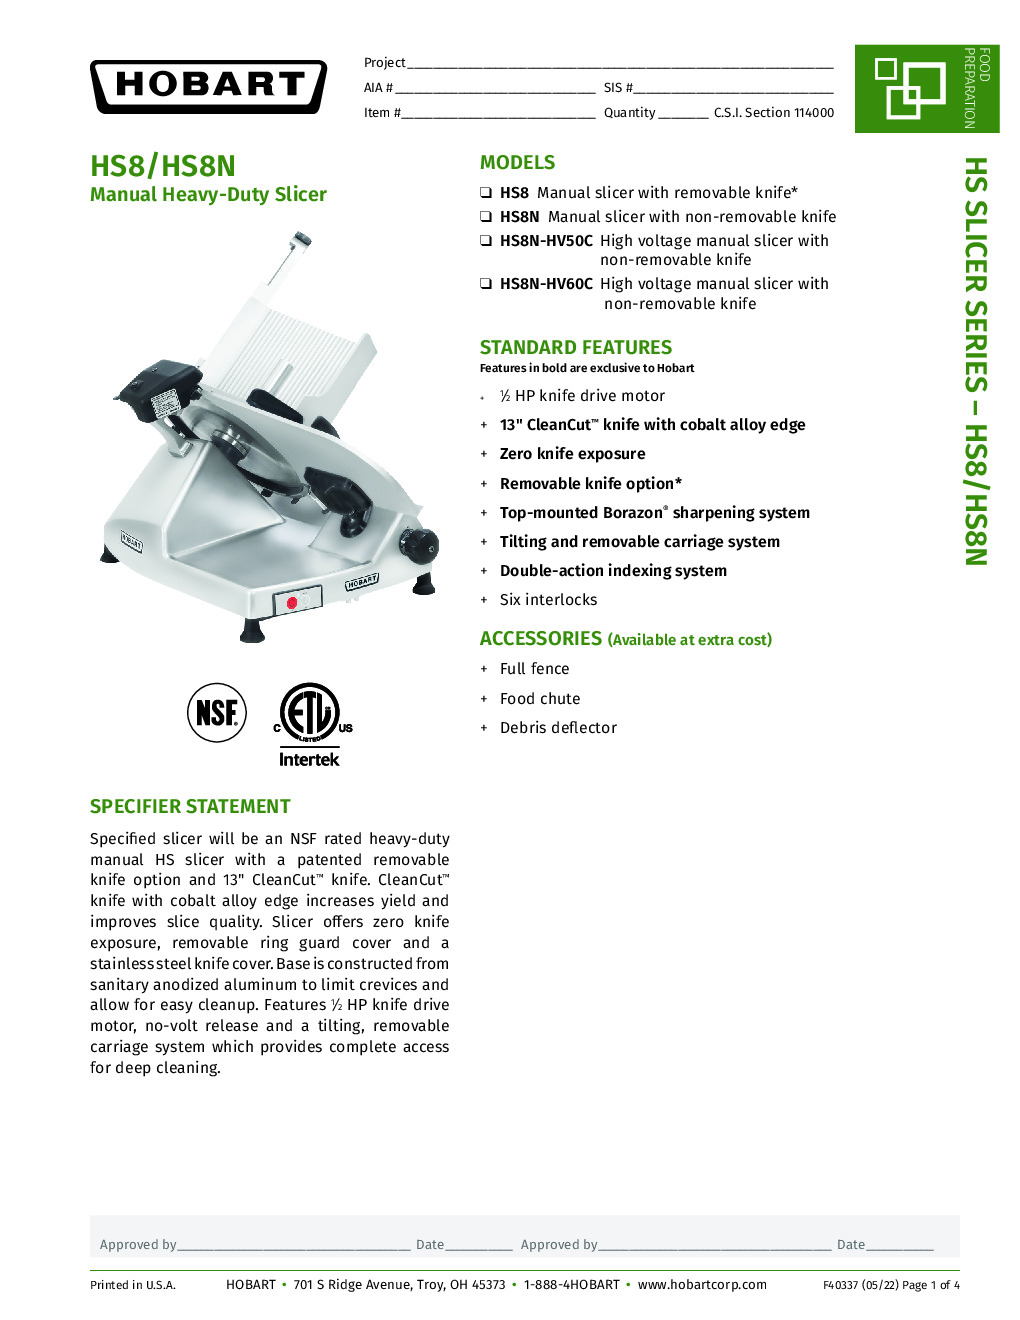 Hobart HS8N-HV60C High Voltage Manual Slicer with 13